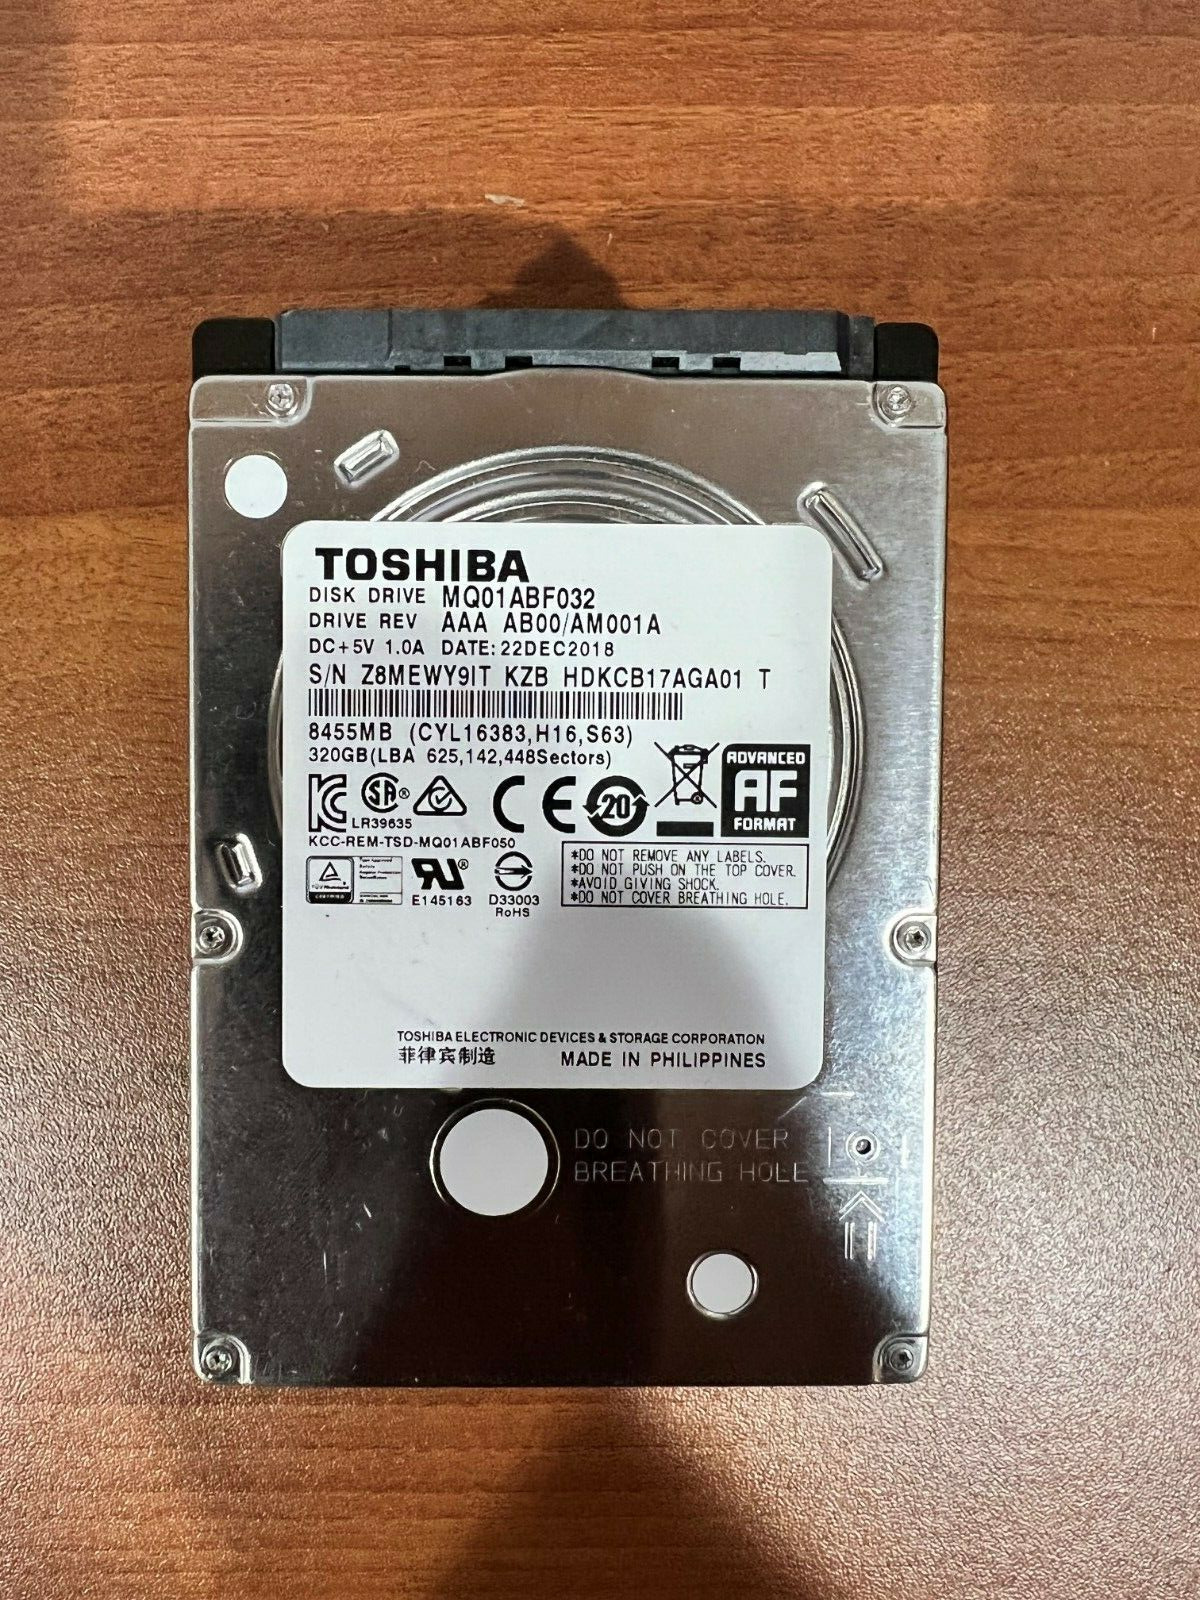 Lot of 10 Toshiba MQ01ACF032 320 GB 2.5